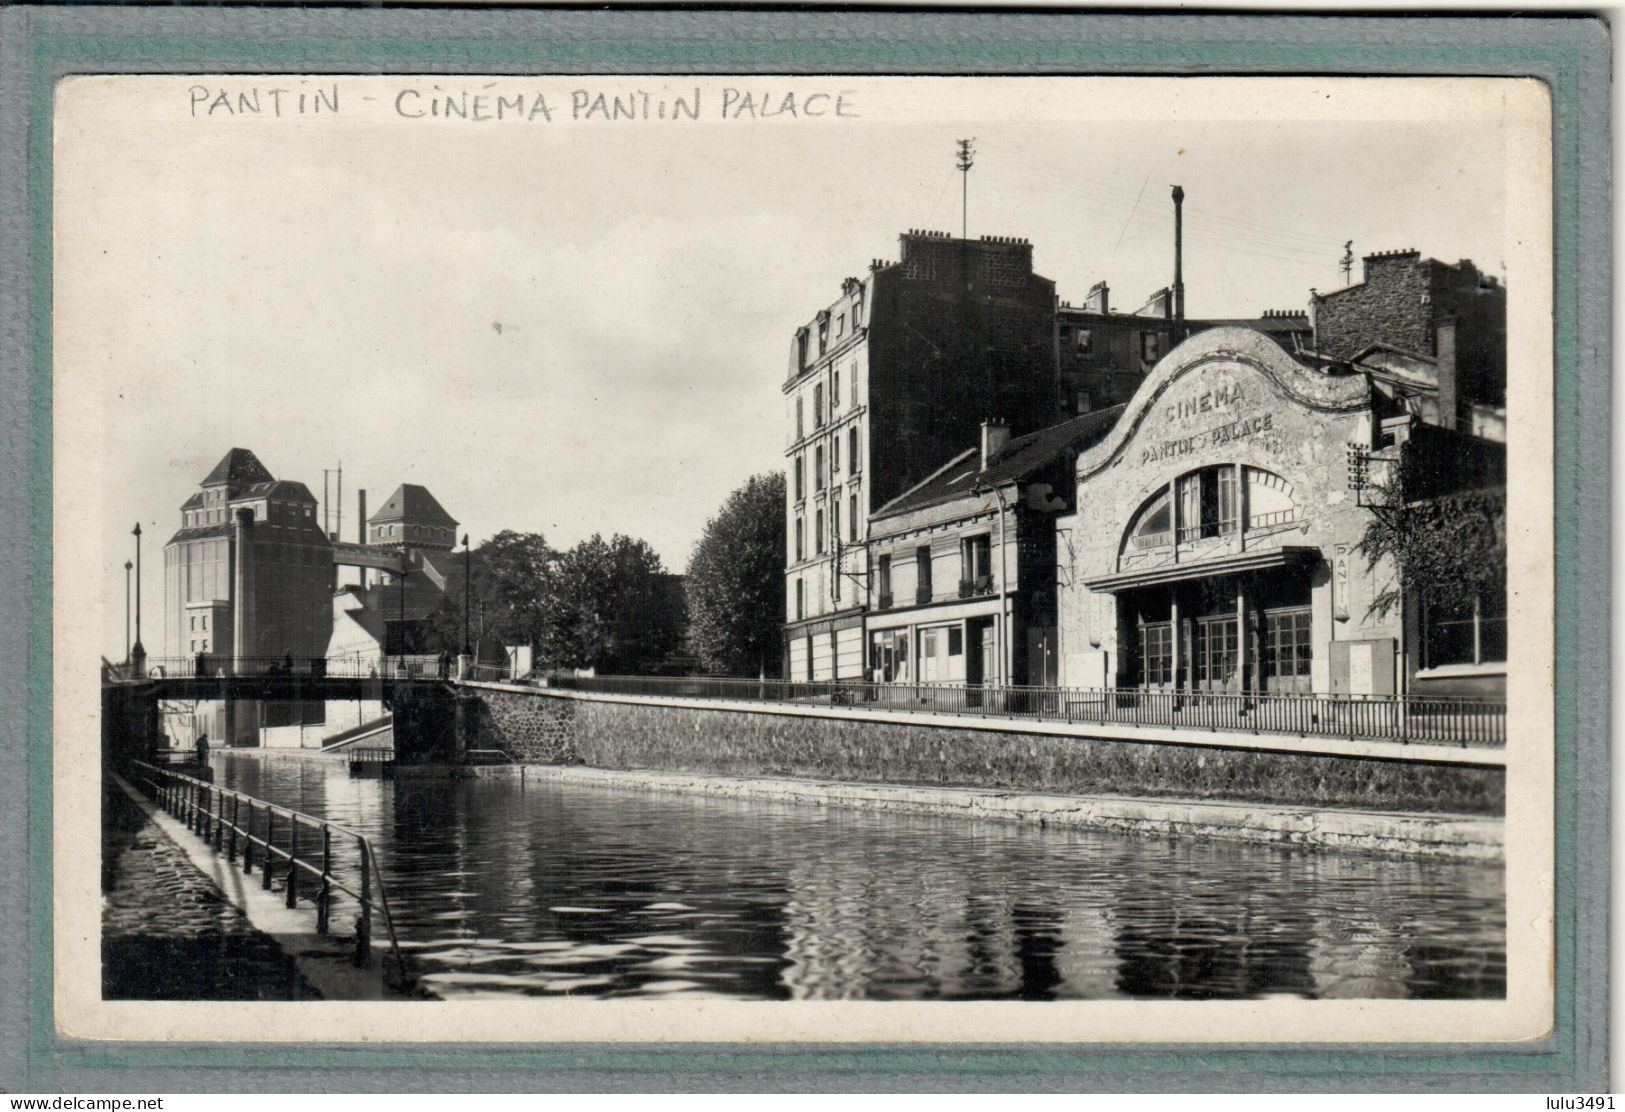 CPA (93) PANTIN - Thème: CINEMA PANTIN PALACE - Canal De L'Ourcq Et Moulins  - 1930 - Pantin